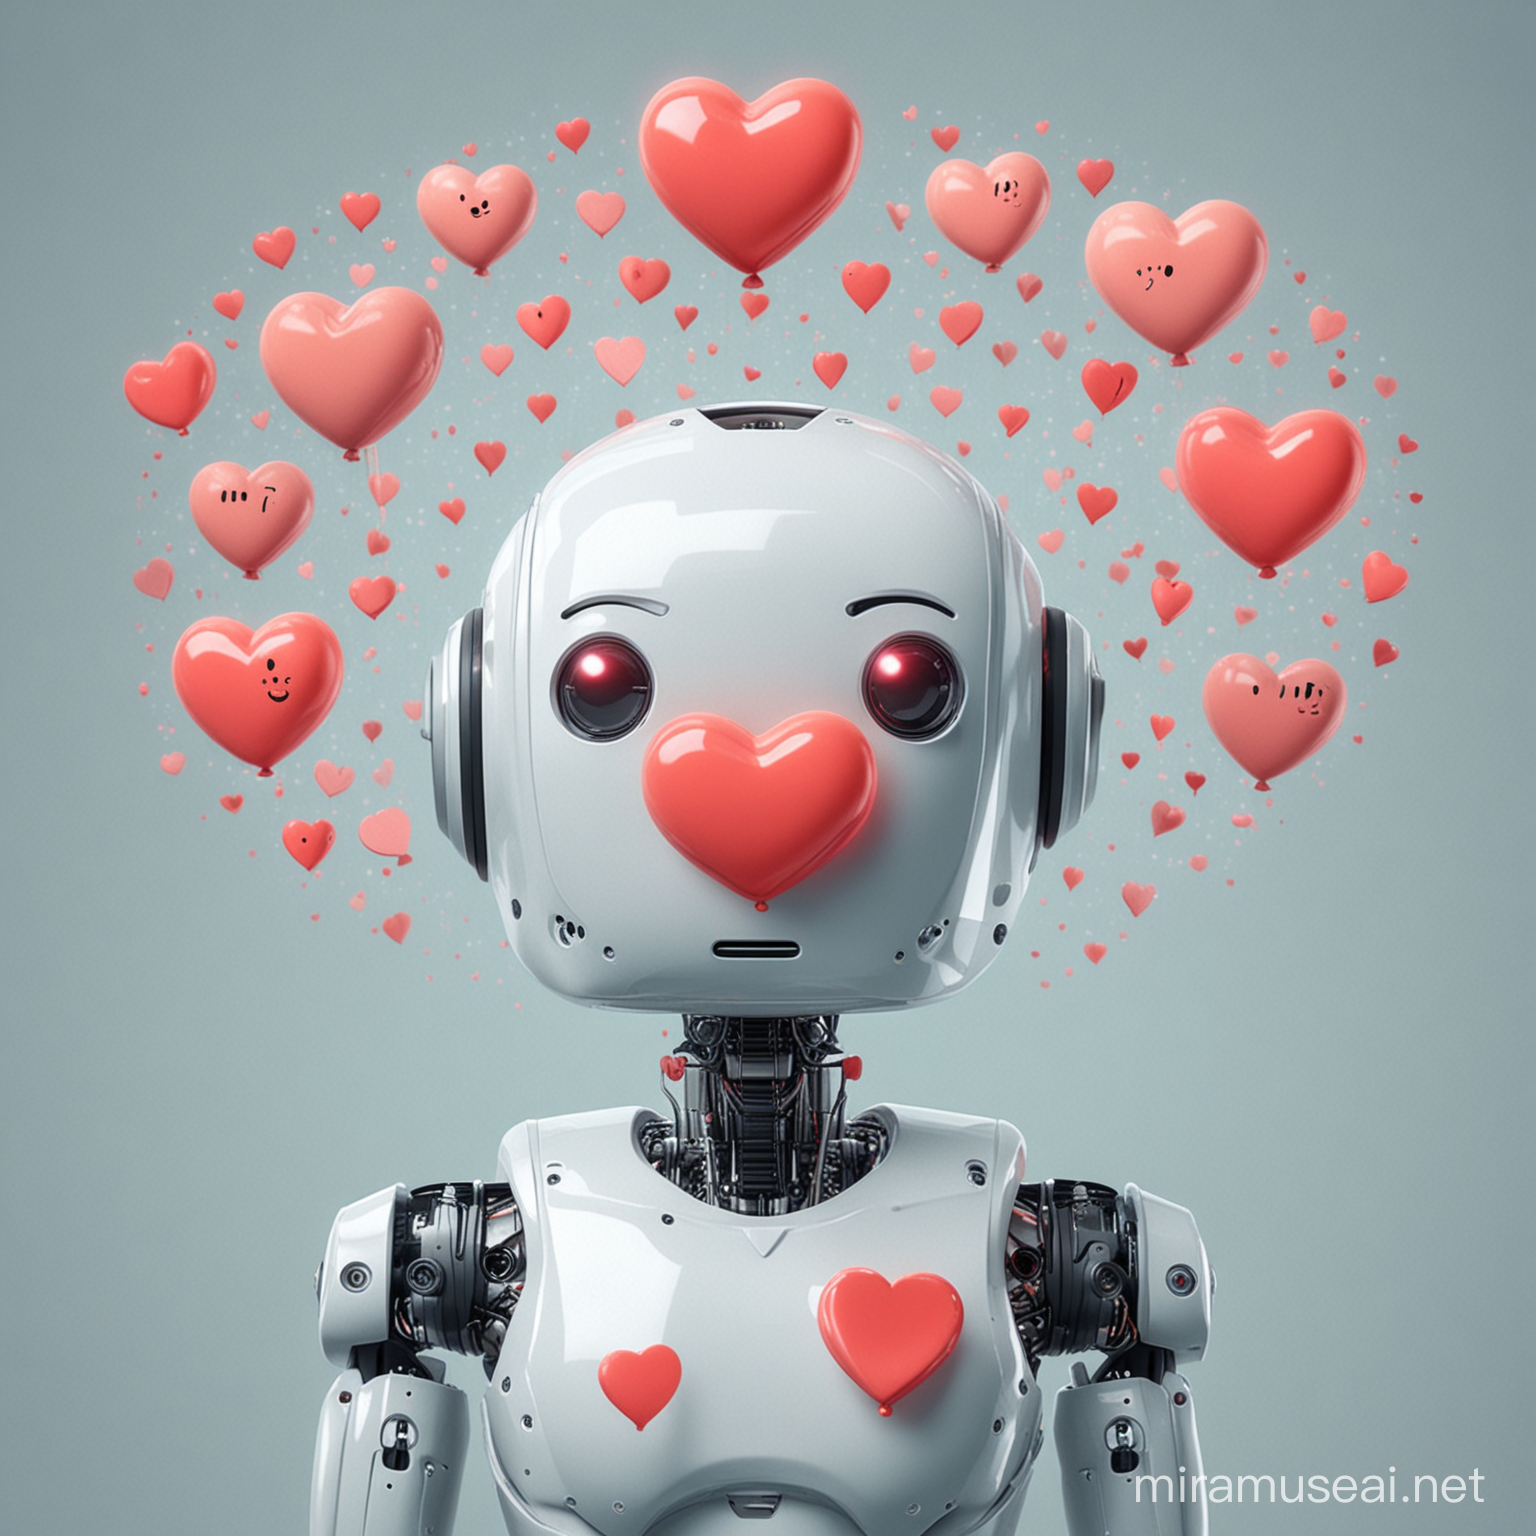 Un robot al que le salen corazones de la cabeza.